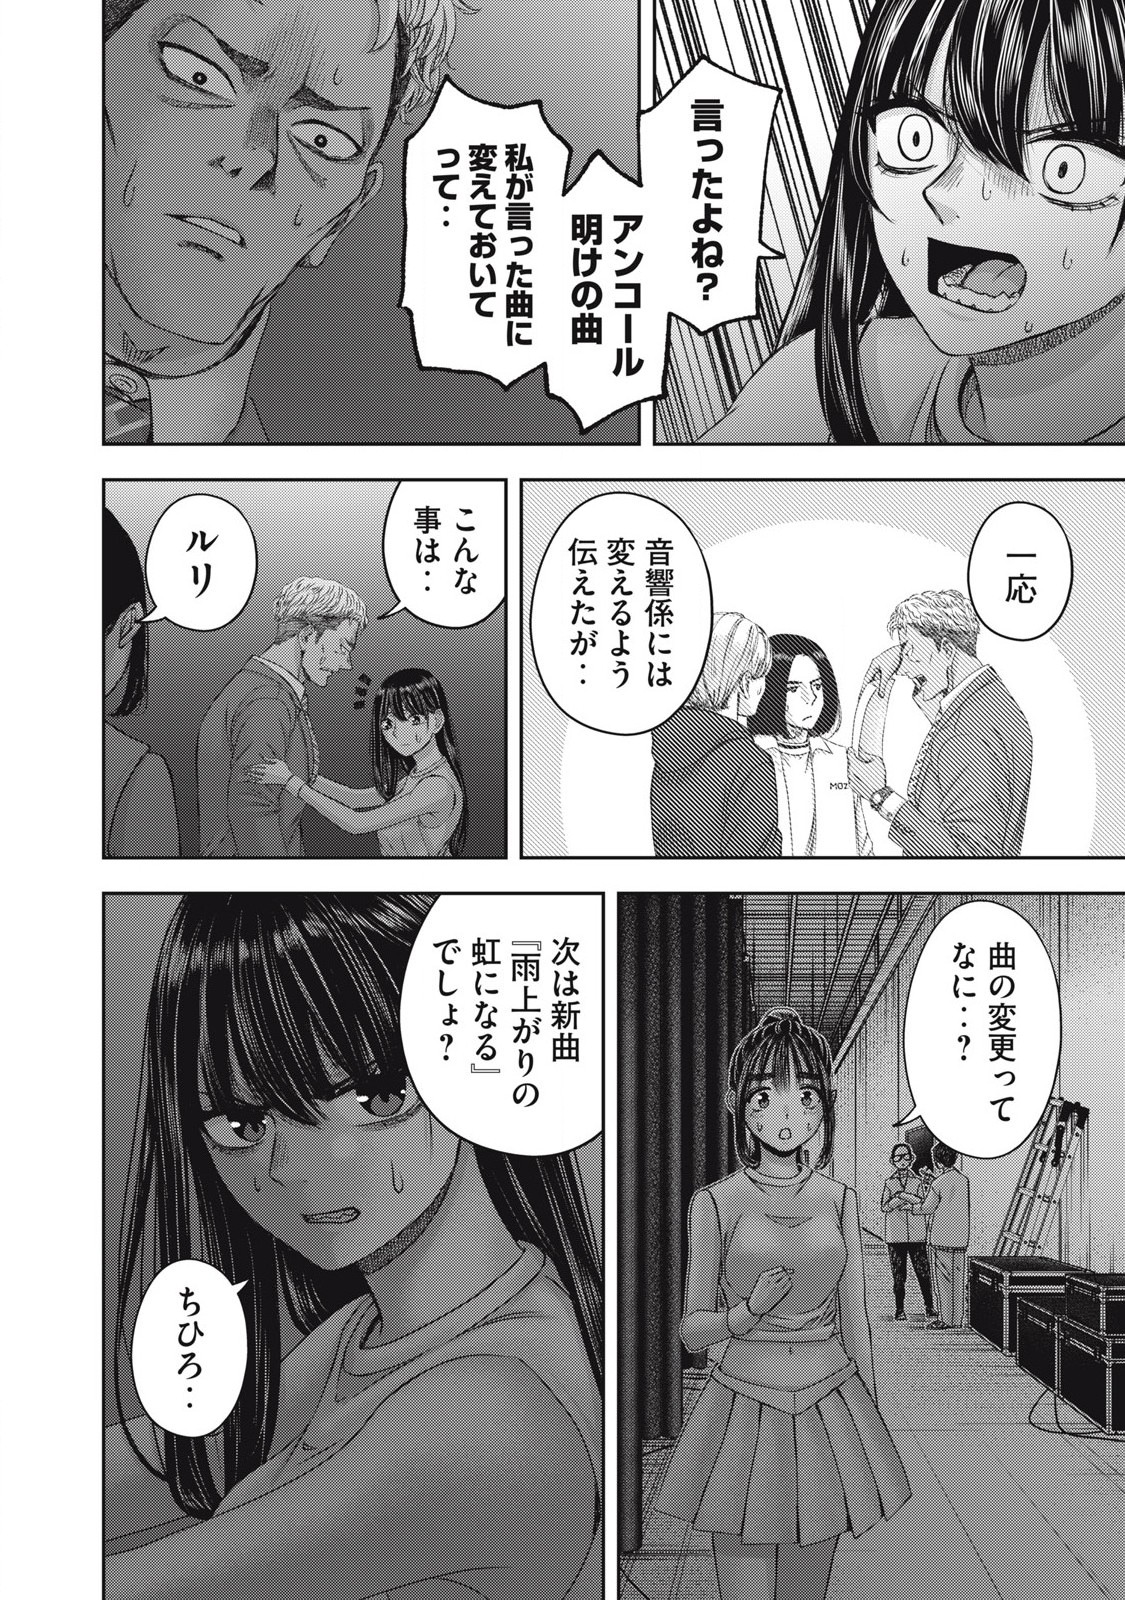 Watashi no Arika - Chapter 58 - Page 6